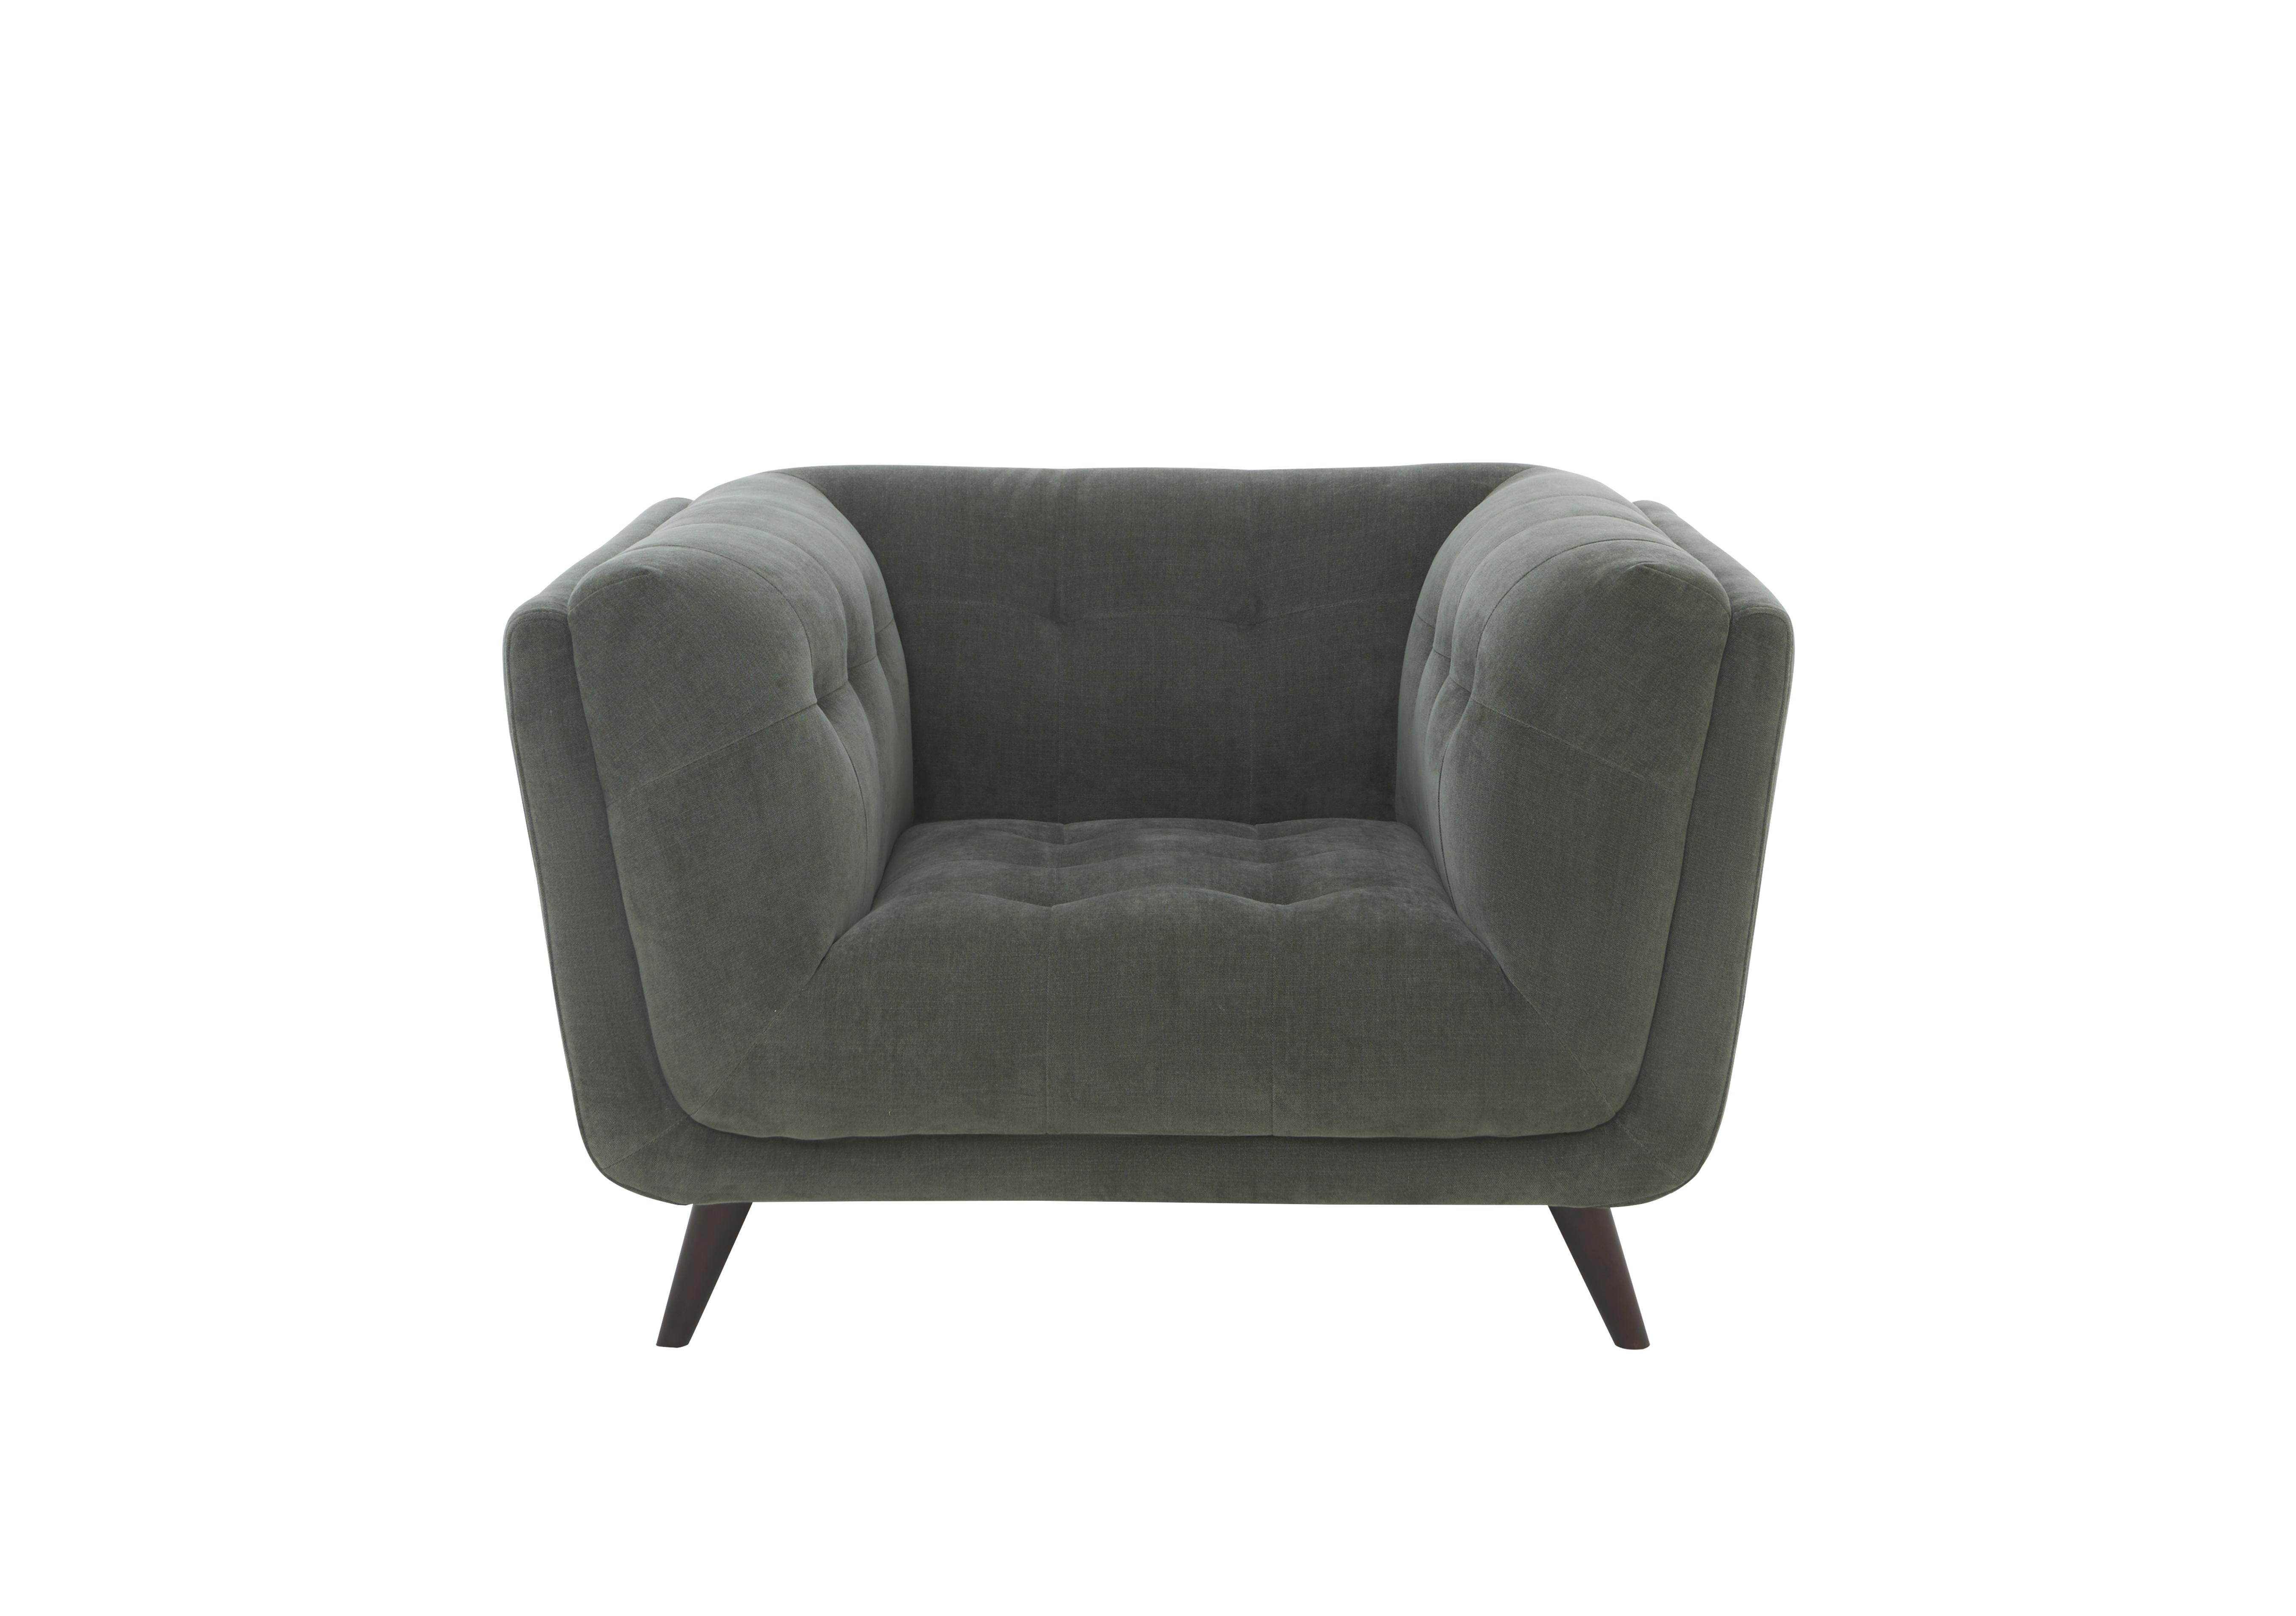 Rene Fabric Armchair in Manhattan 58001 Pine Es Ft on Furniture Village